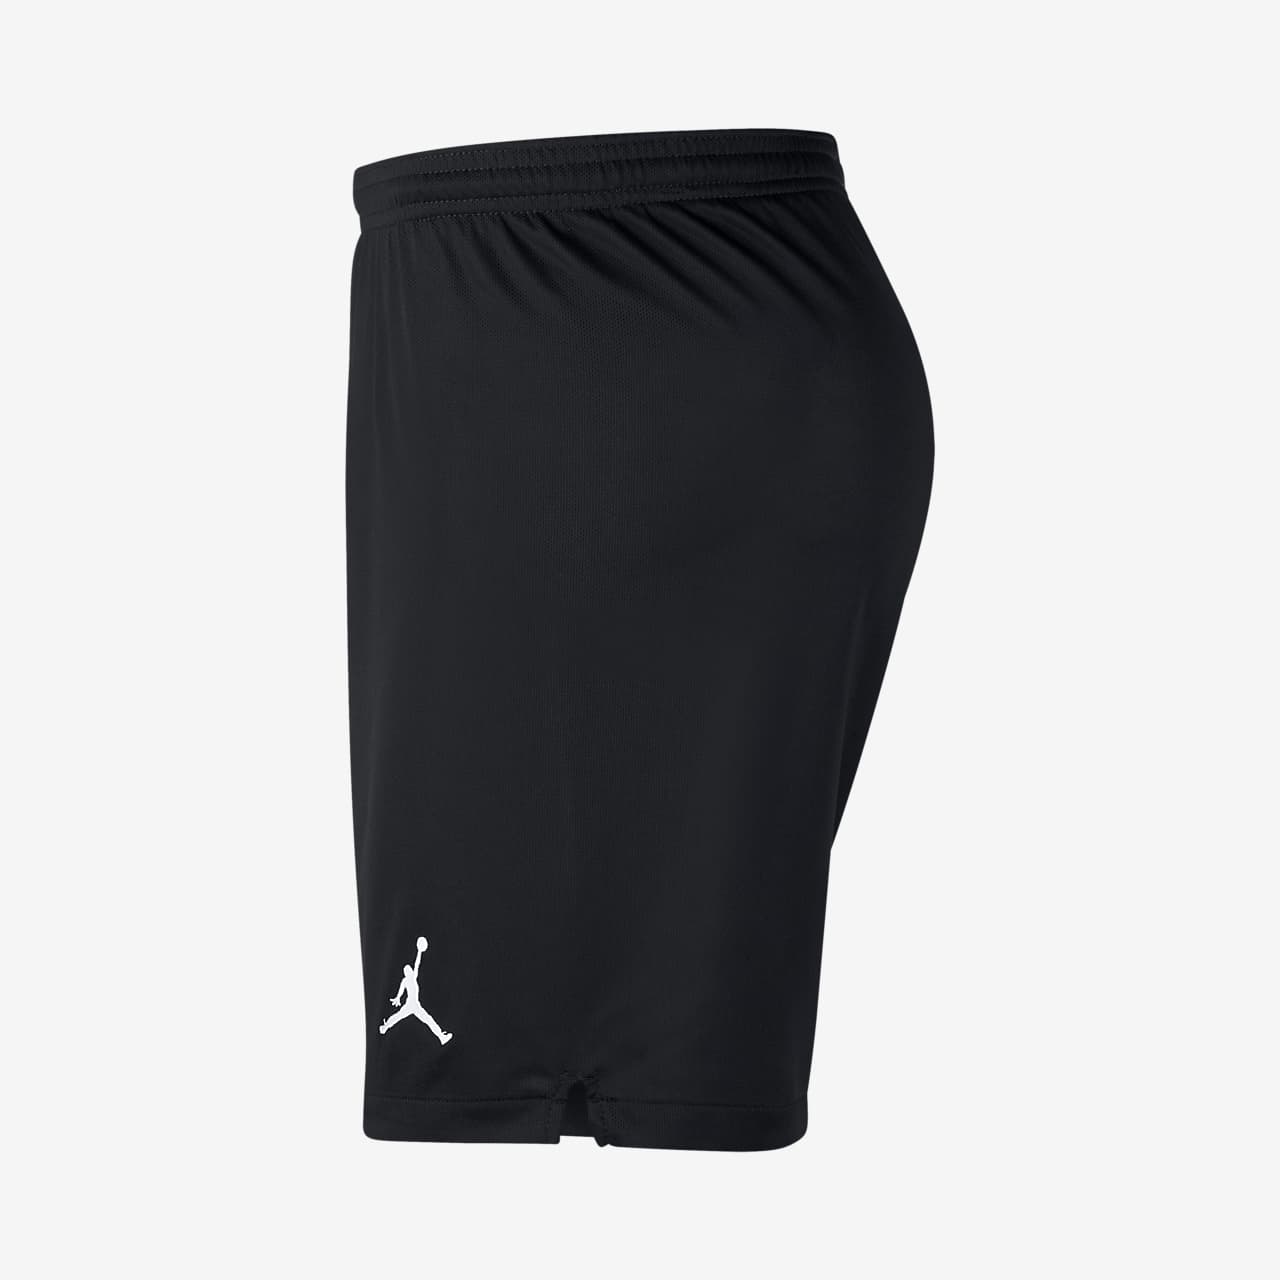 jordan x psg shorts